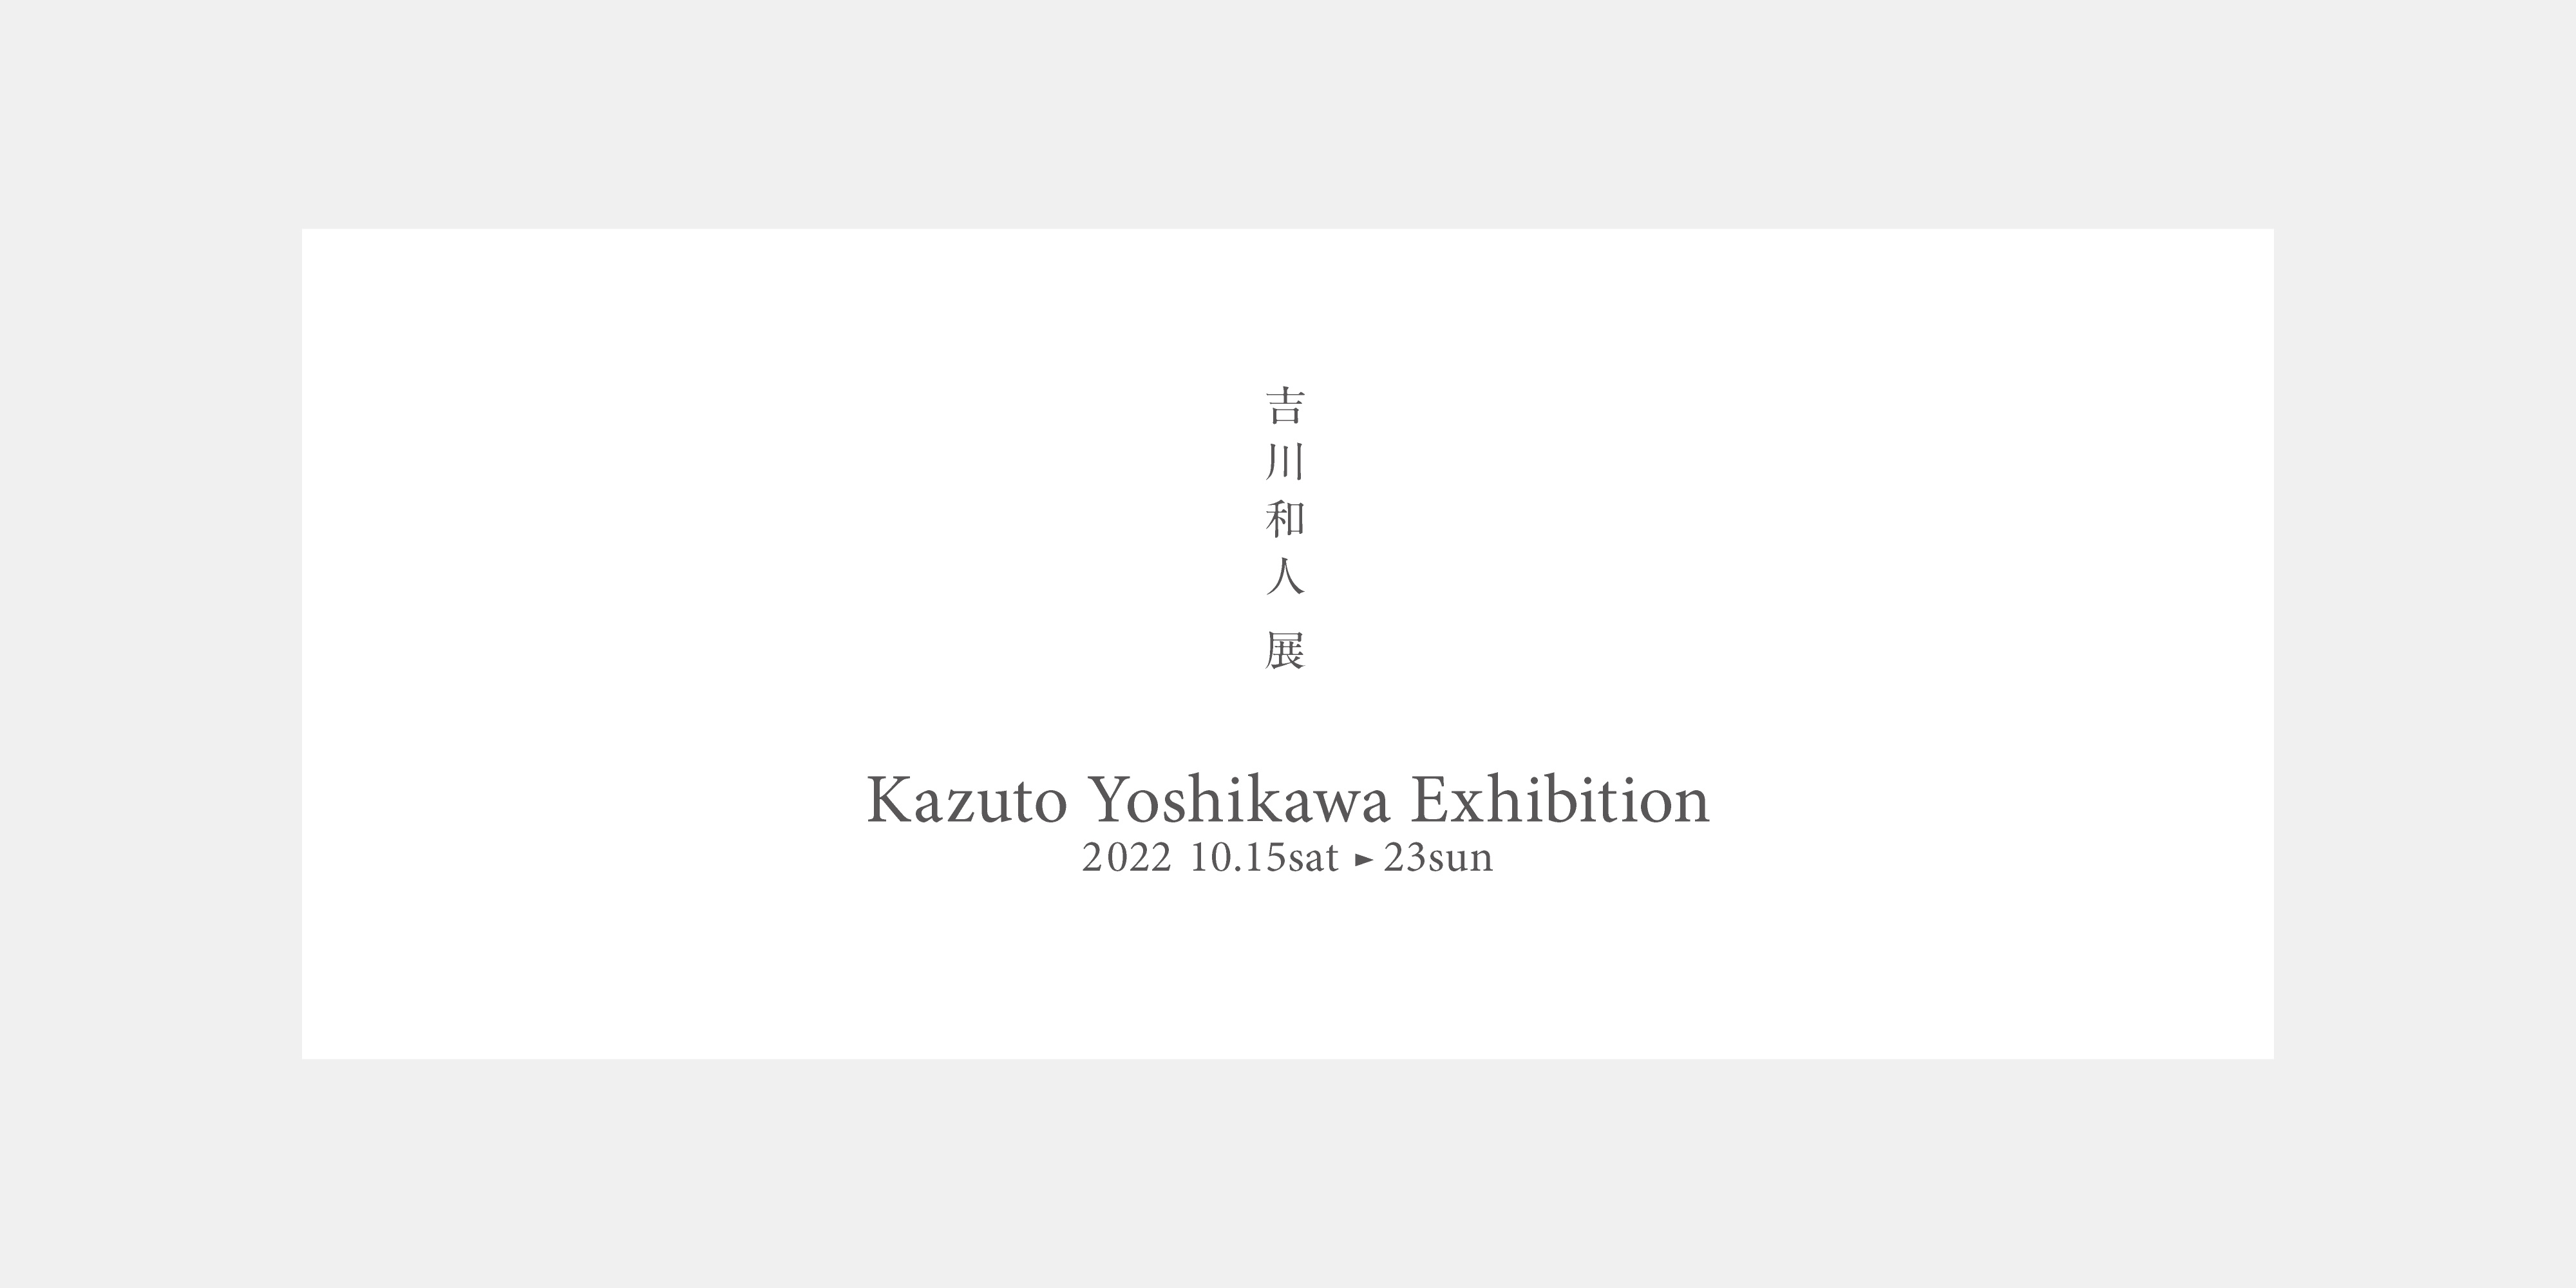 Kazuto Yoshikawa Exhibition